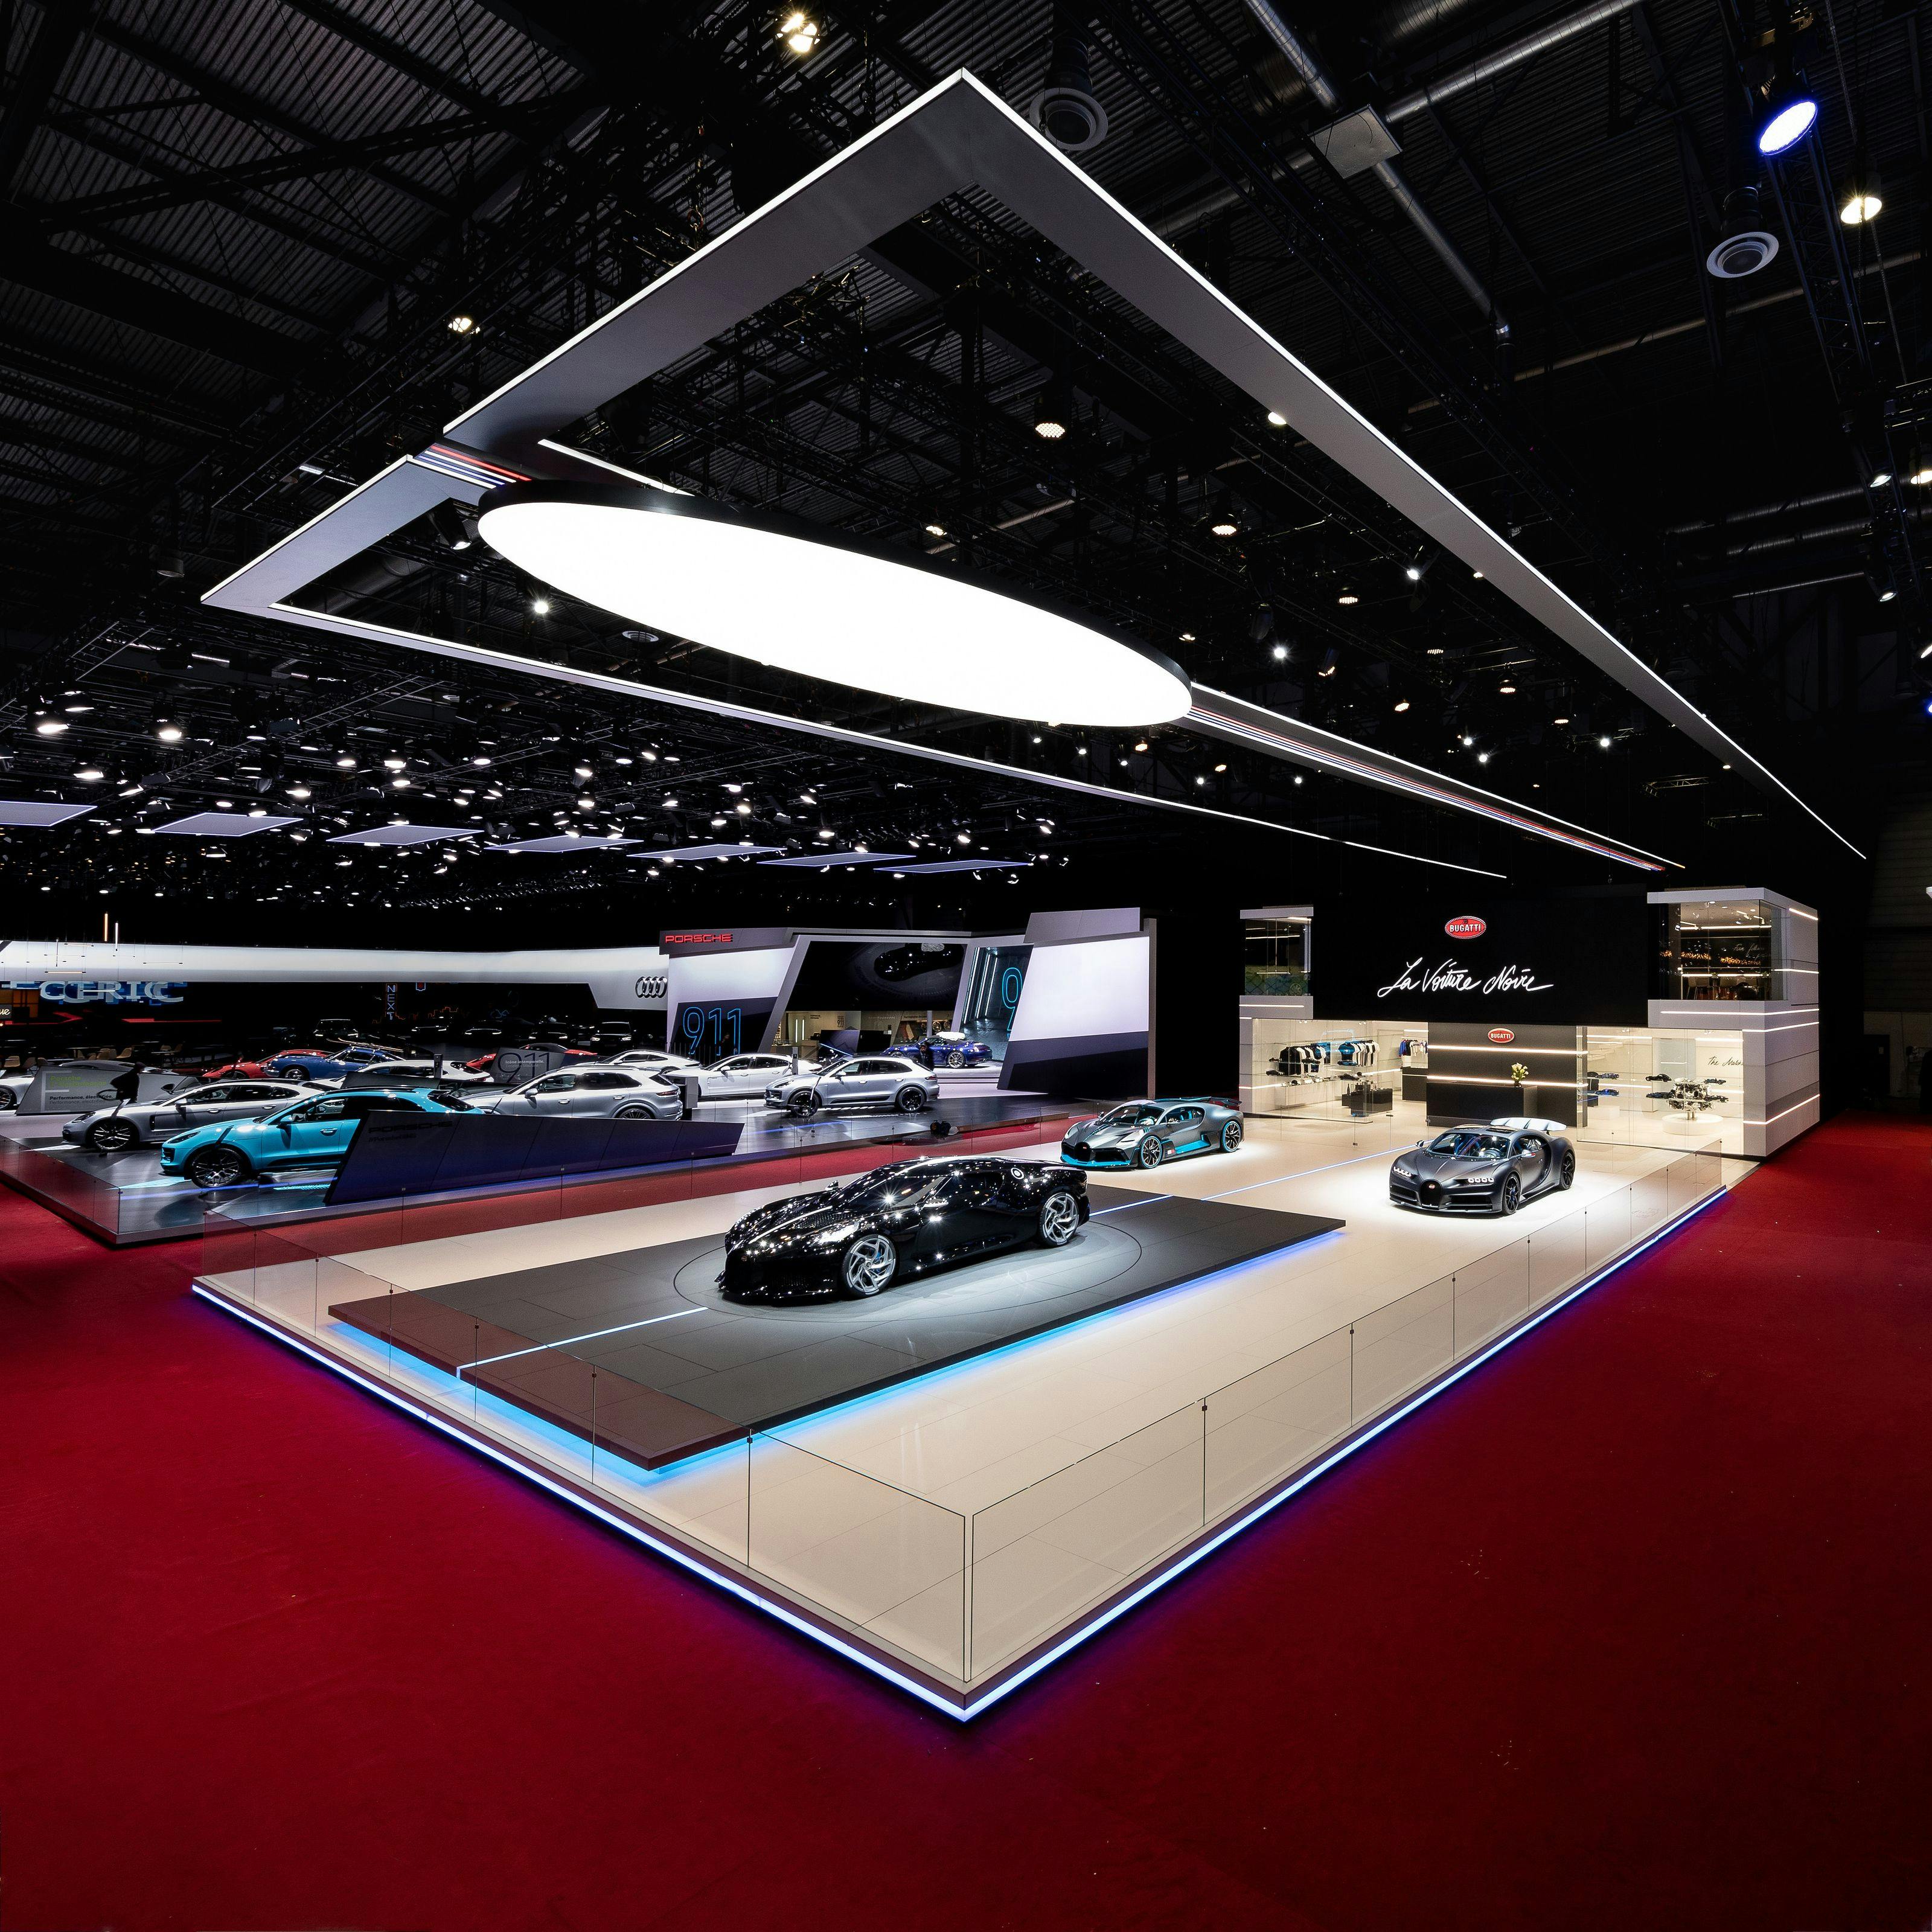 Accolades – three design awards for Bugatti's exhibition stand